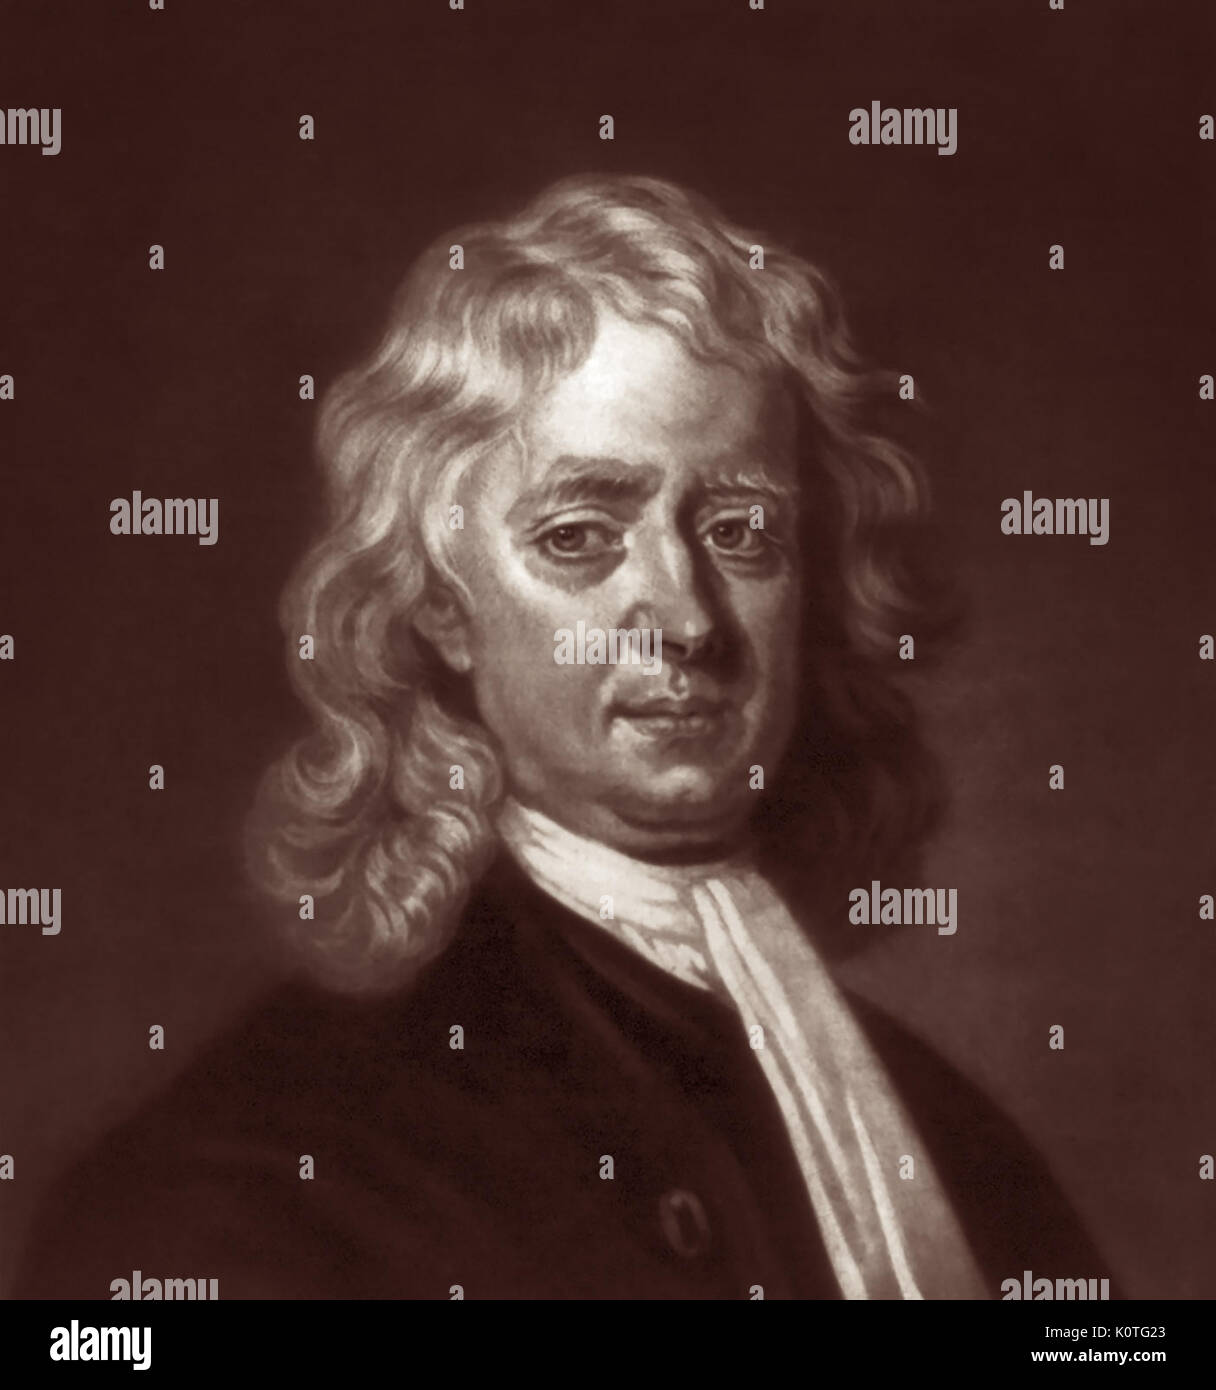 Sir Isaac Newton PRS (1643 - 1727) war ein englischer Mathematiker, Astronom und Physiker, der infinitesimalrechnung erfunden und entdeckt die Gesetze von Schwerkraft und Bewegung. Newton war eine zentrale Figur in der wissenschaftlichen Revolution und wird weithin als einer der einflussreichsten Wissenschaftler aller Zeiten anerkannt. Stockfoto